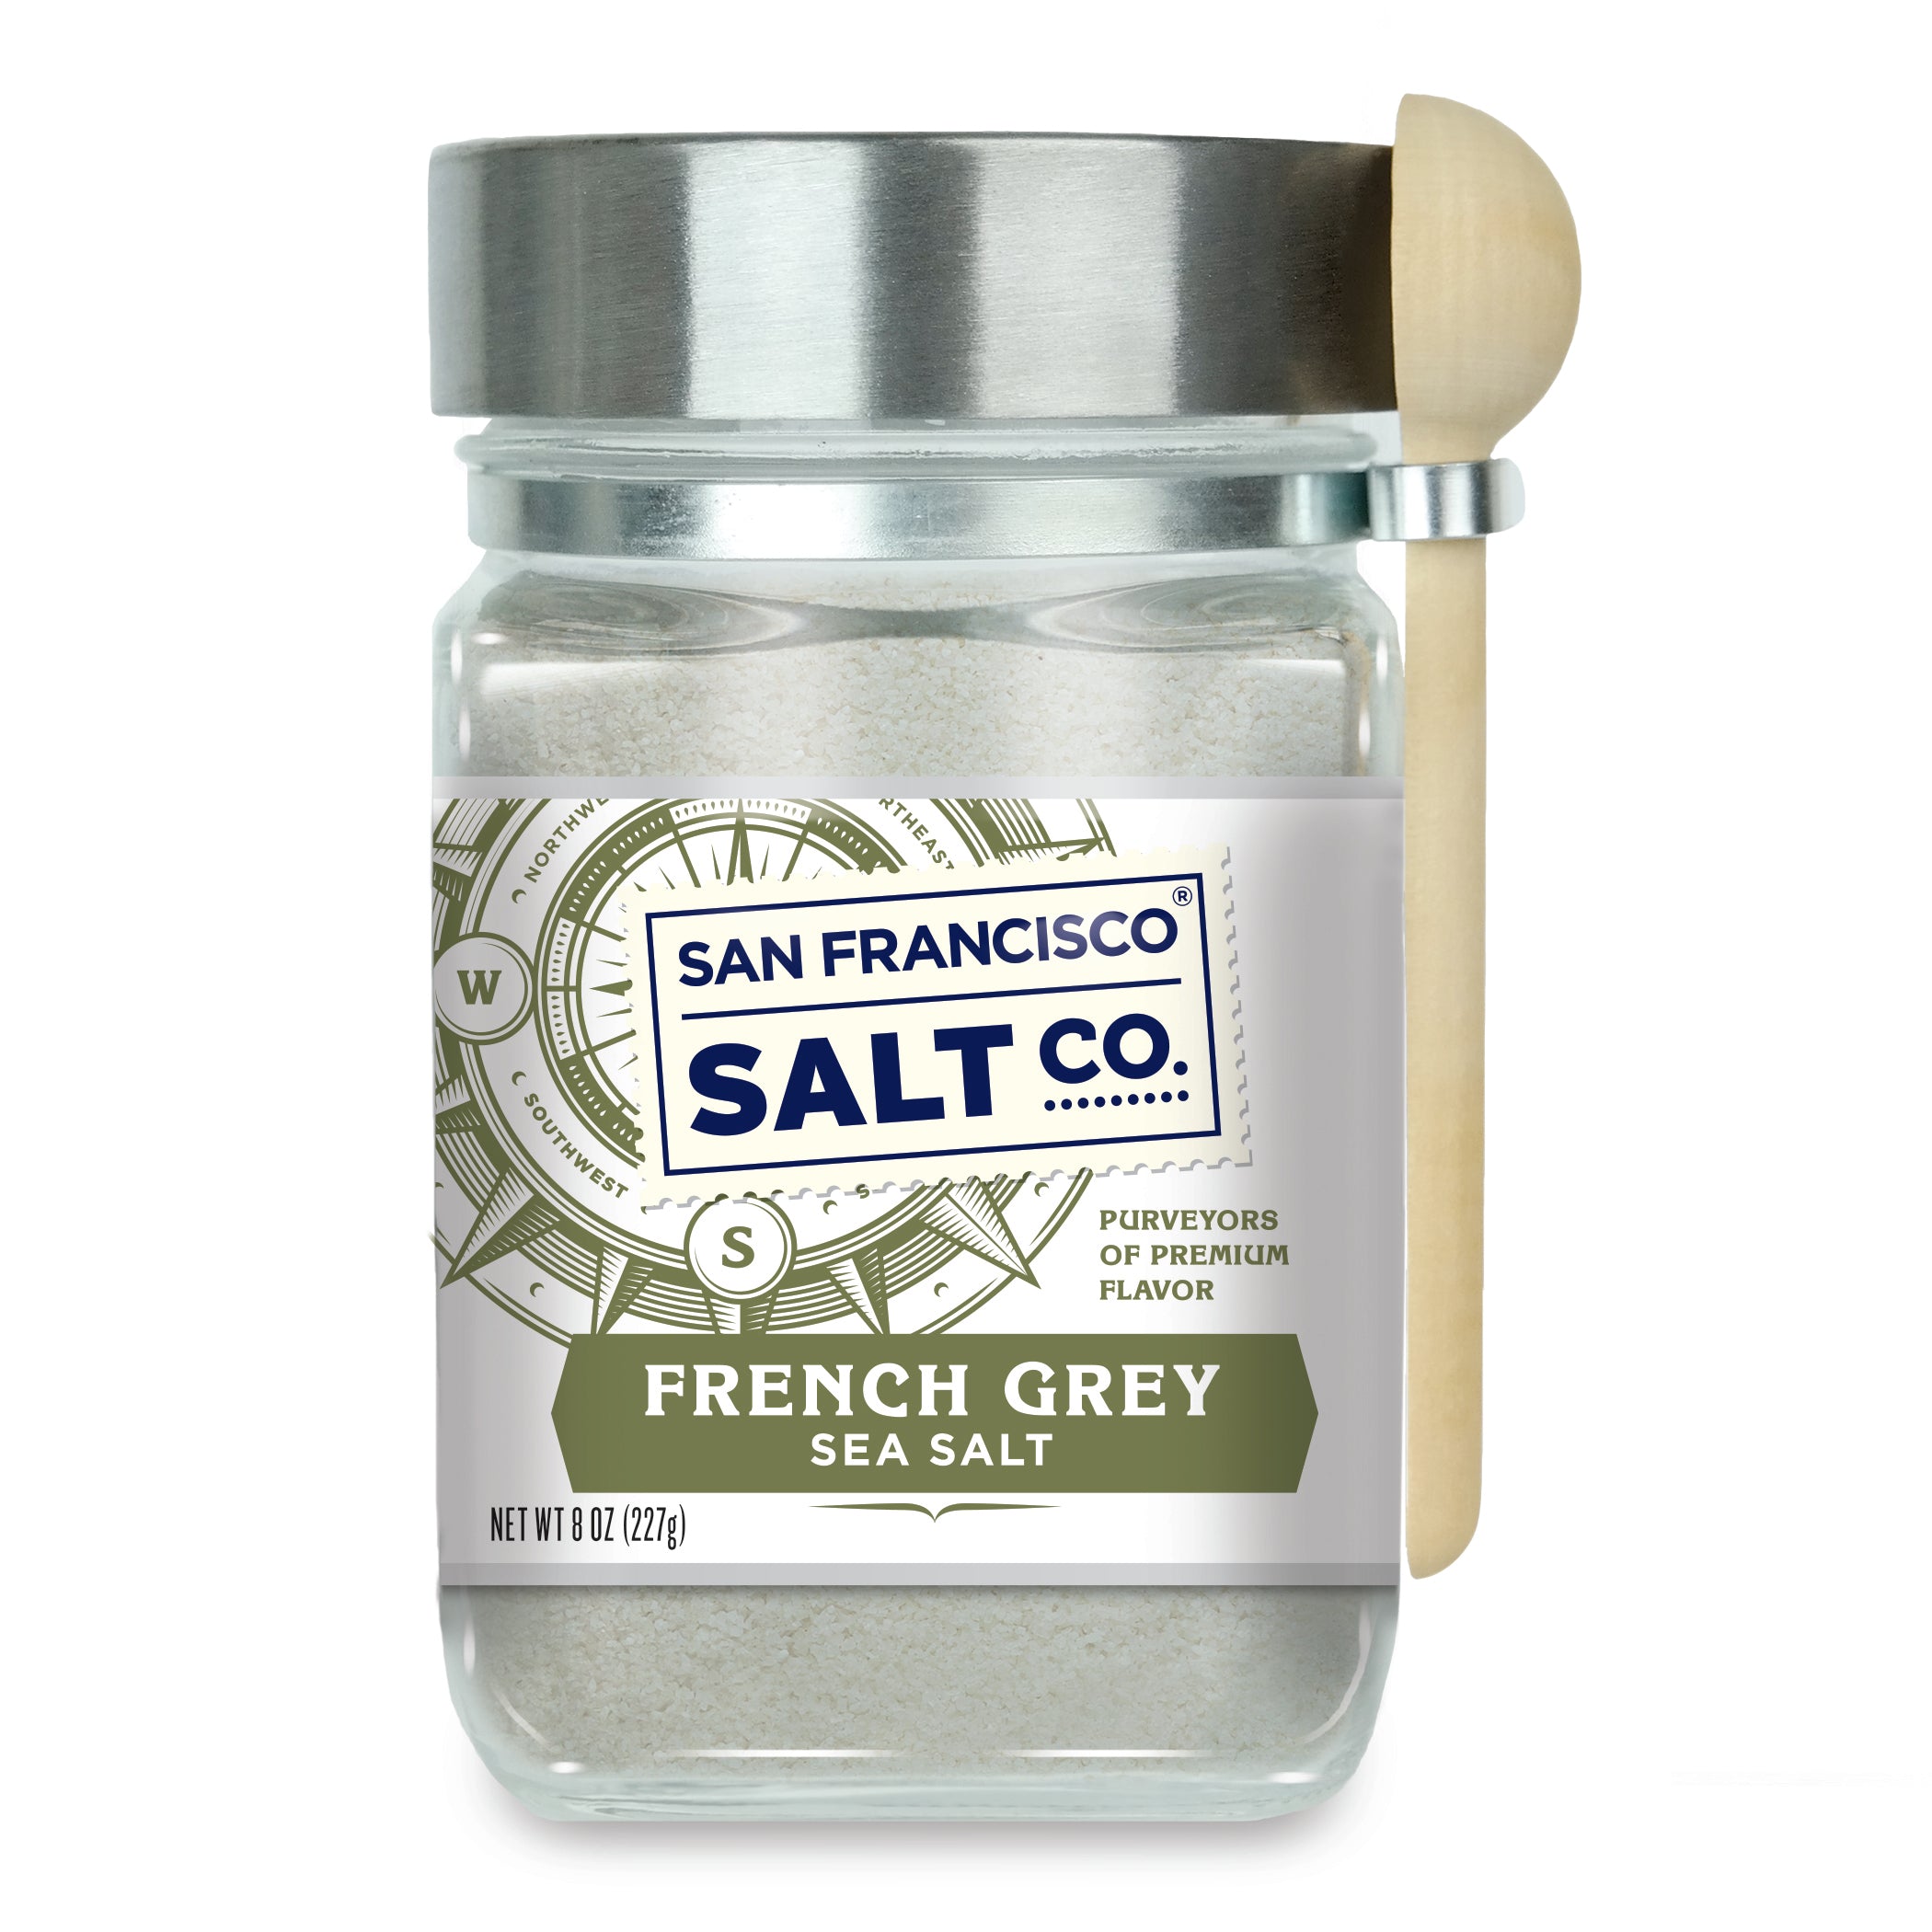 French Grey Sea Salt 8 oz. Chef's Jar - San Francisco Salt Company